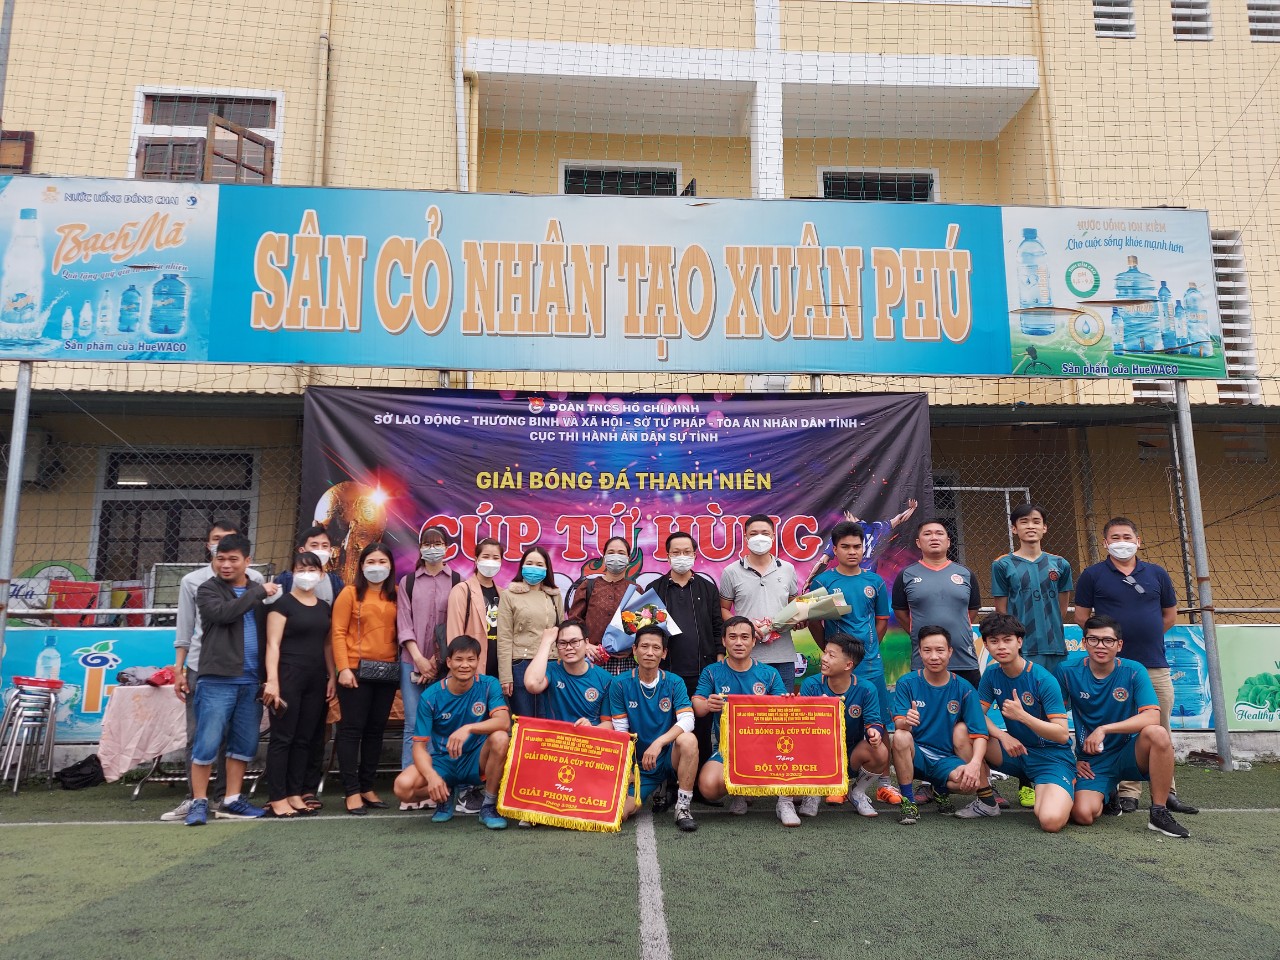 Giair bóng đá thanh niên chào mừng Đại hội Chi đoàn Cục THADS tỉnh Thừa Thiên Huế, nhiệm kỳ 2022 - 2024 2